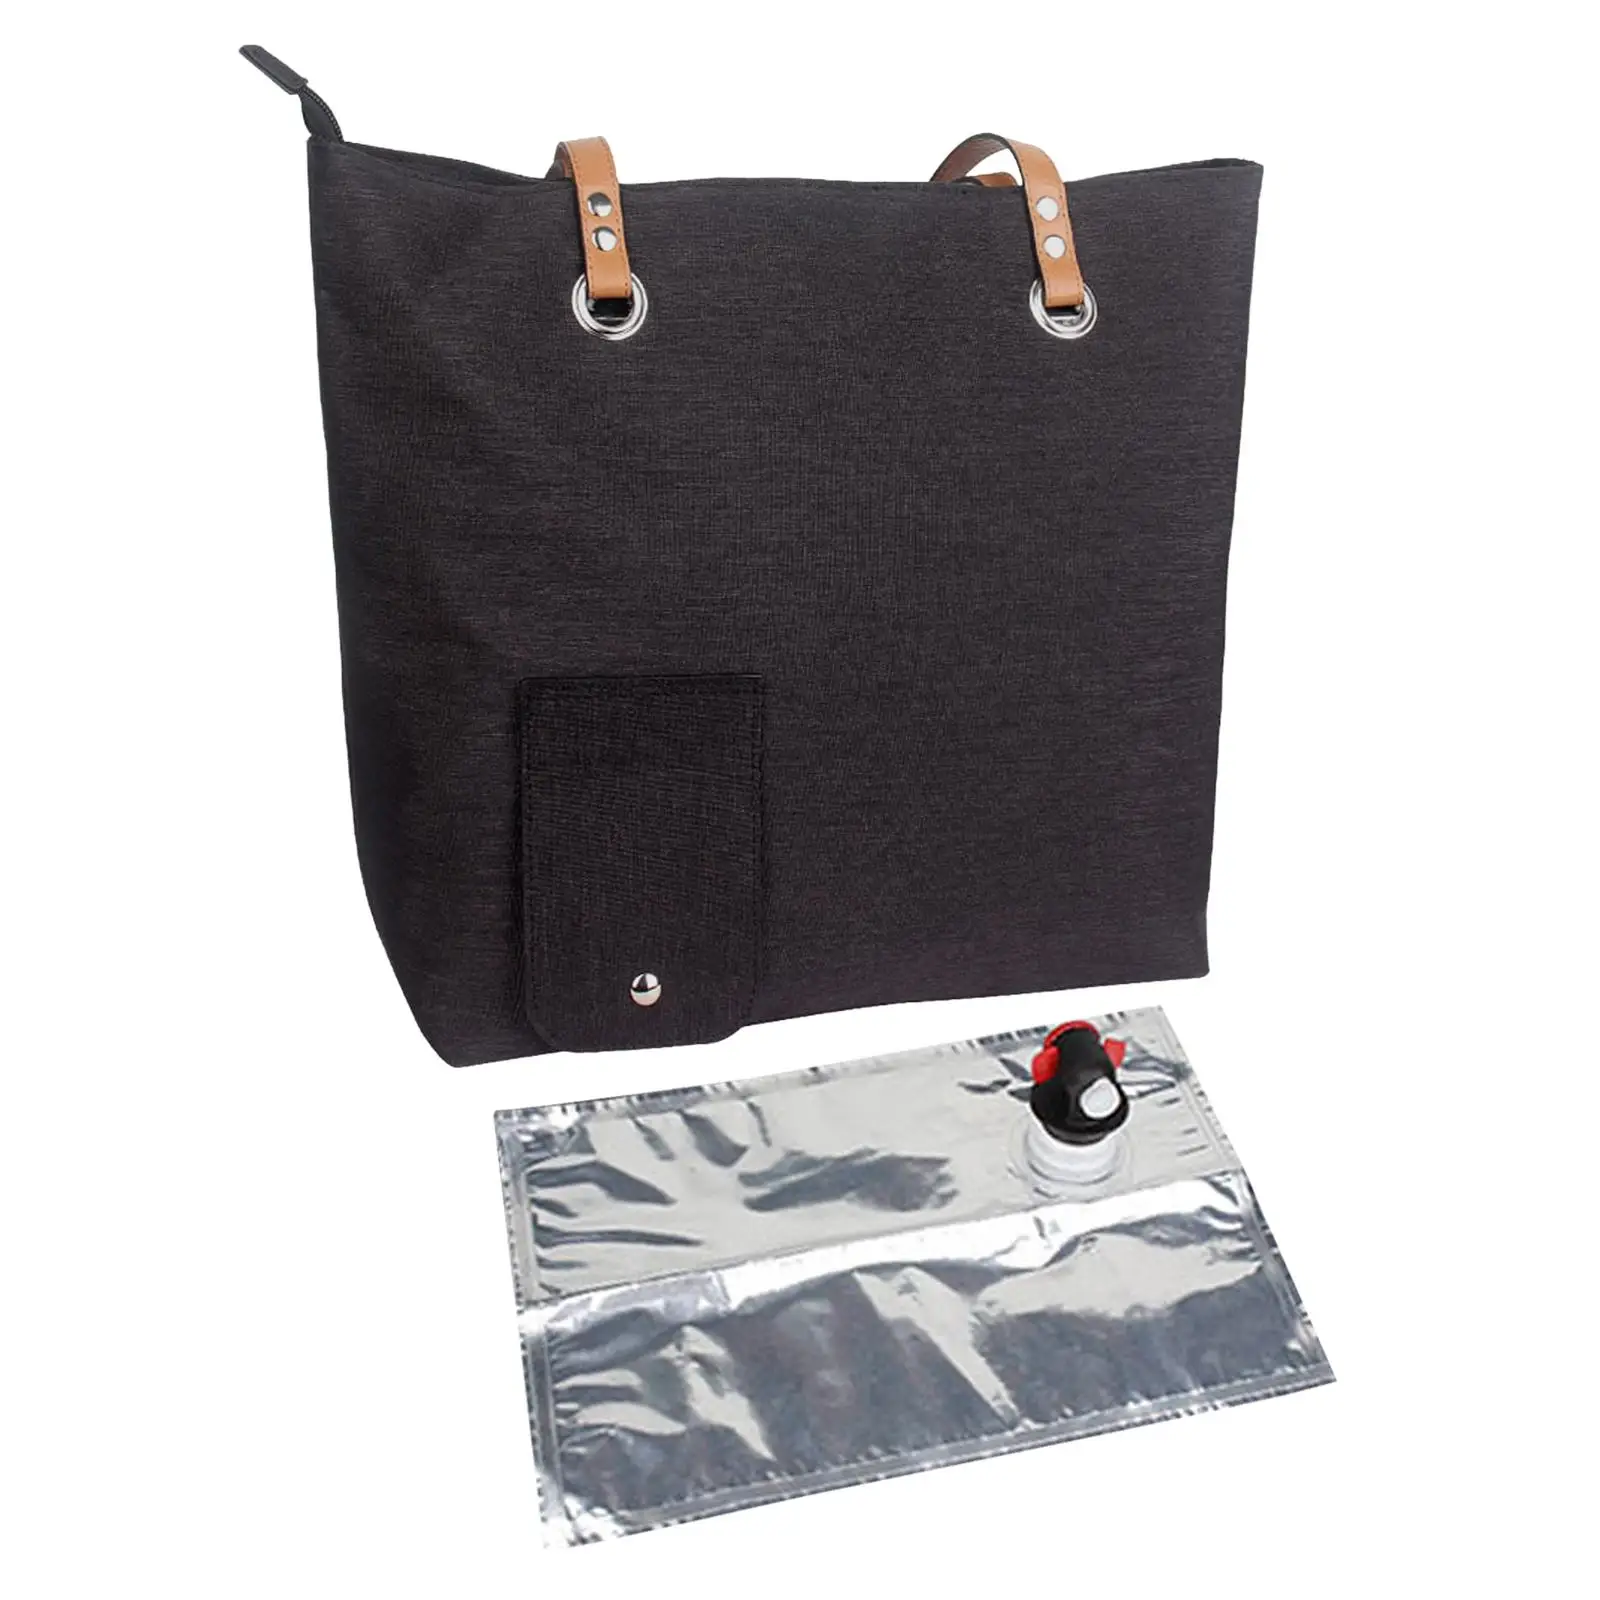 Insulated Cooler Bag Travel Beverage Handbag Shoulder Bag for Beach